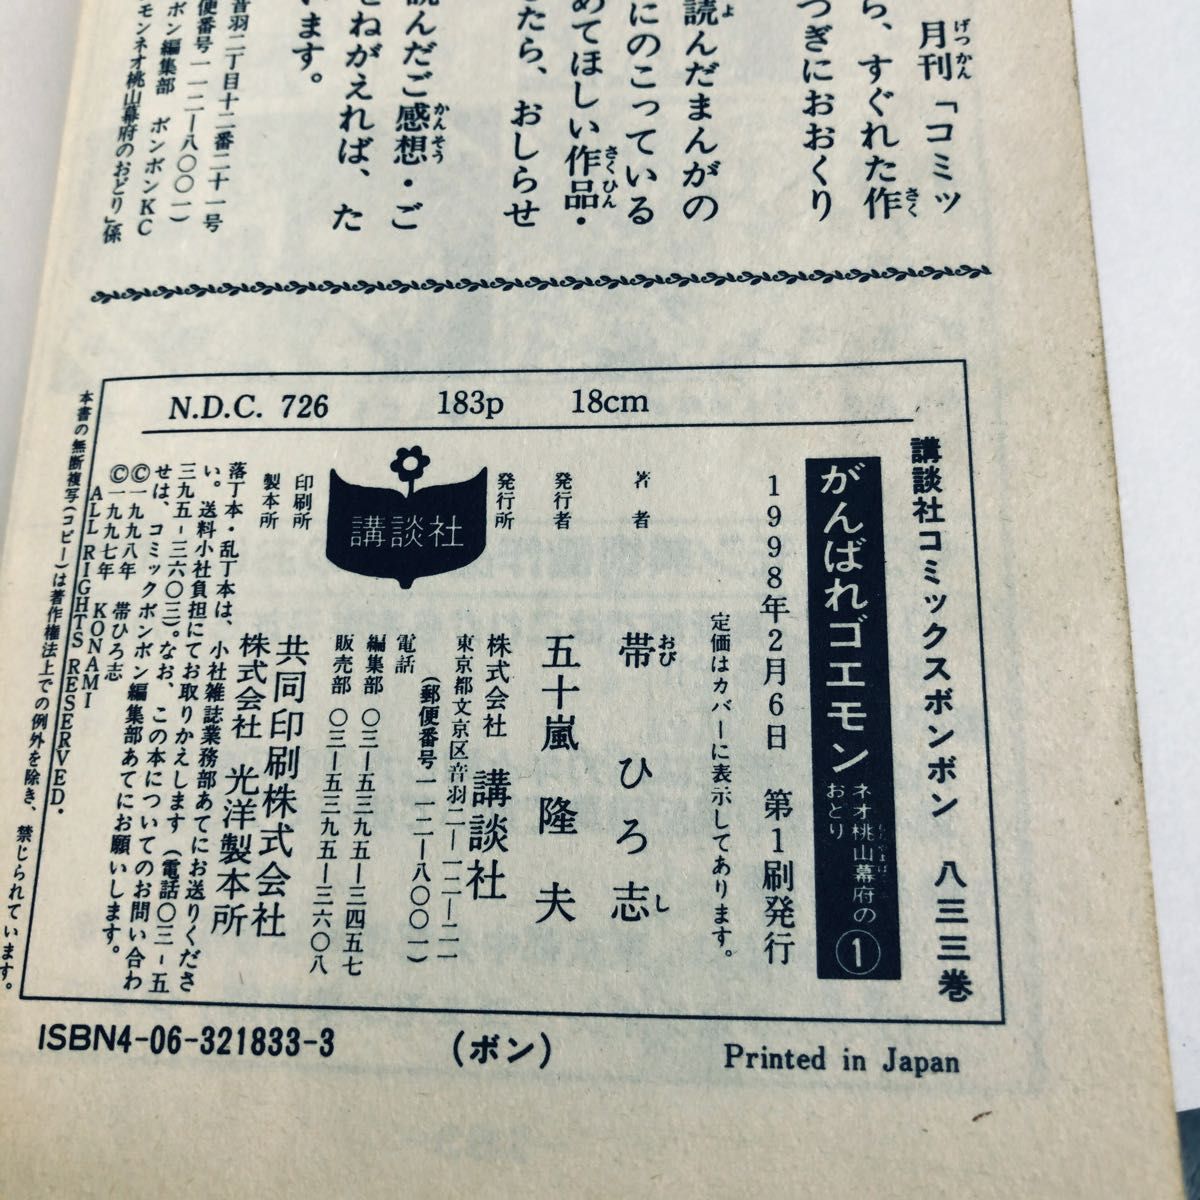 初版 がんばれゴエモン ネオ桃山幕府のおどり 帯ひろ志 ボンボンコミック 1 2 巻